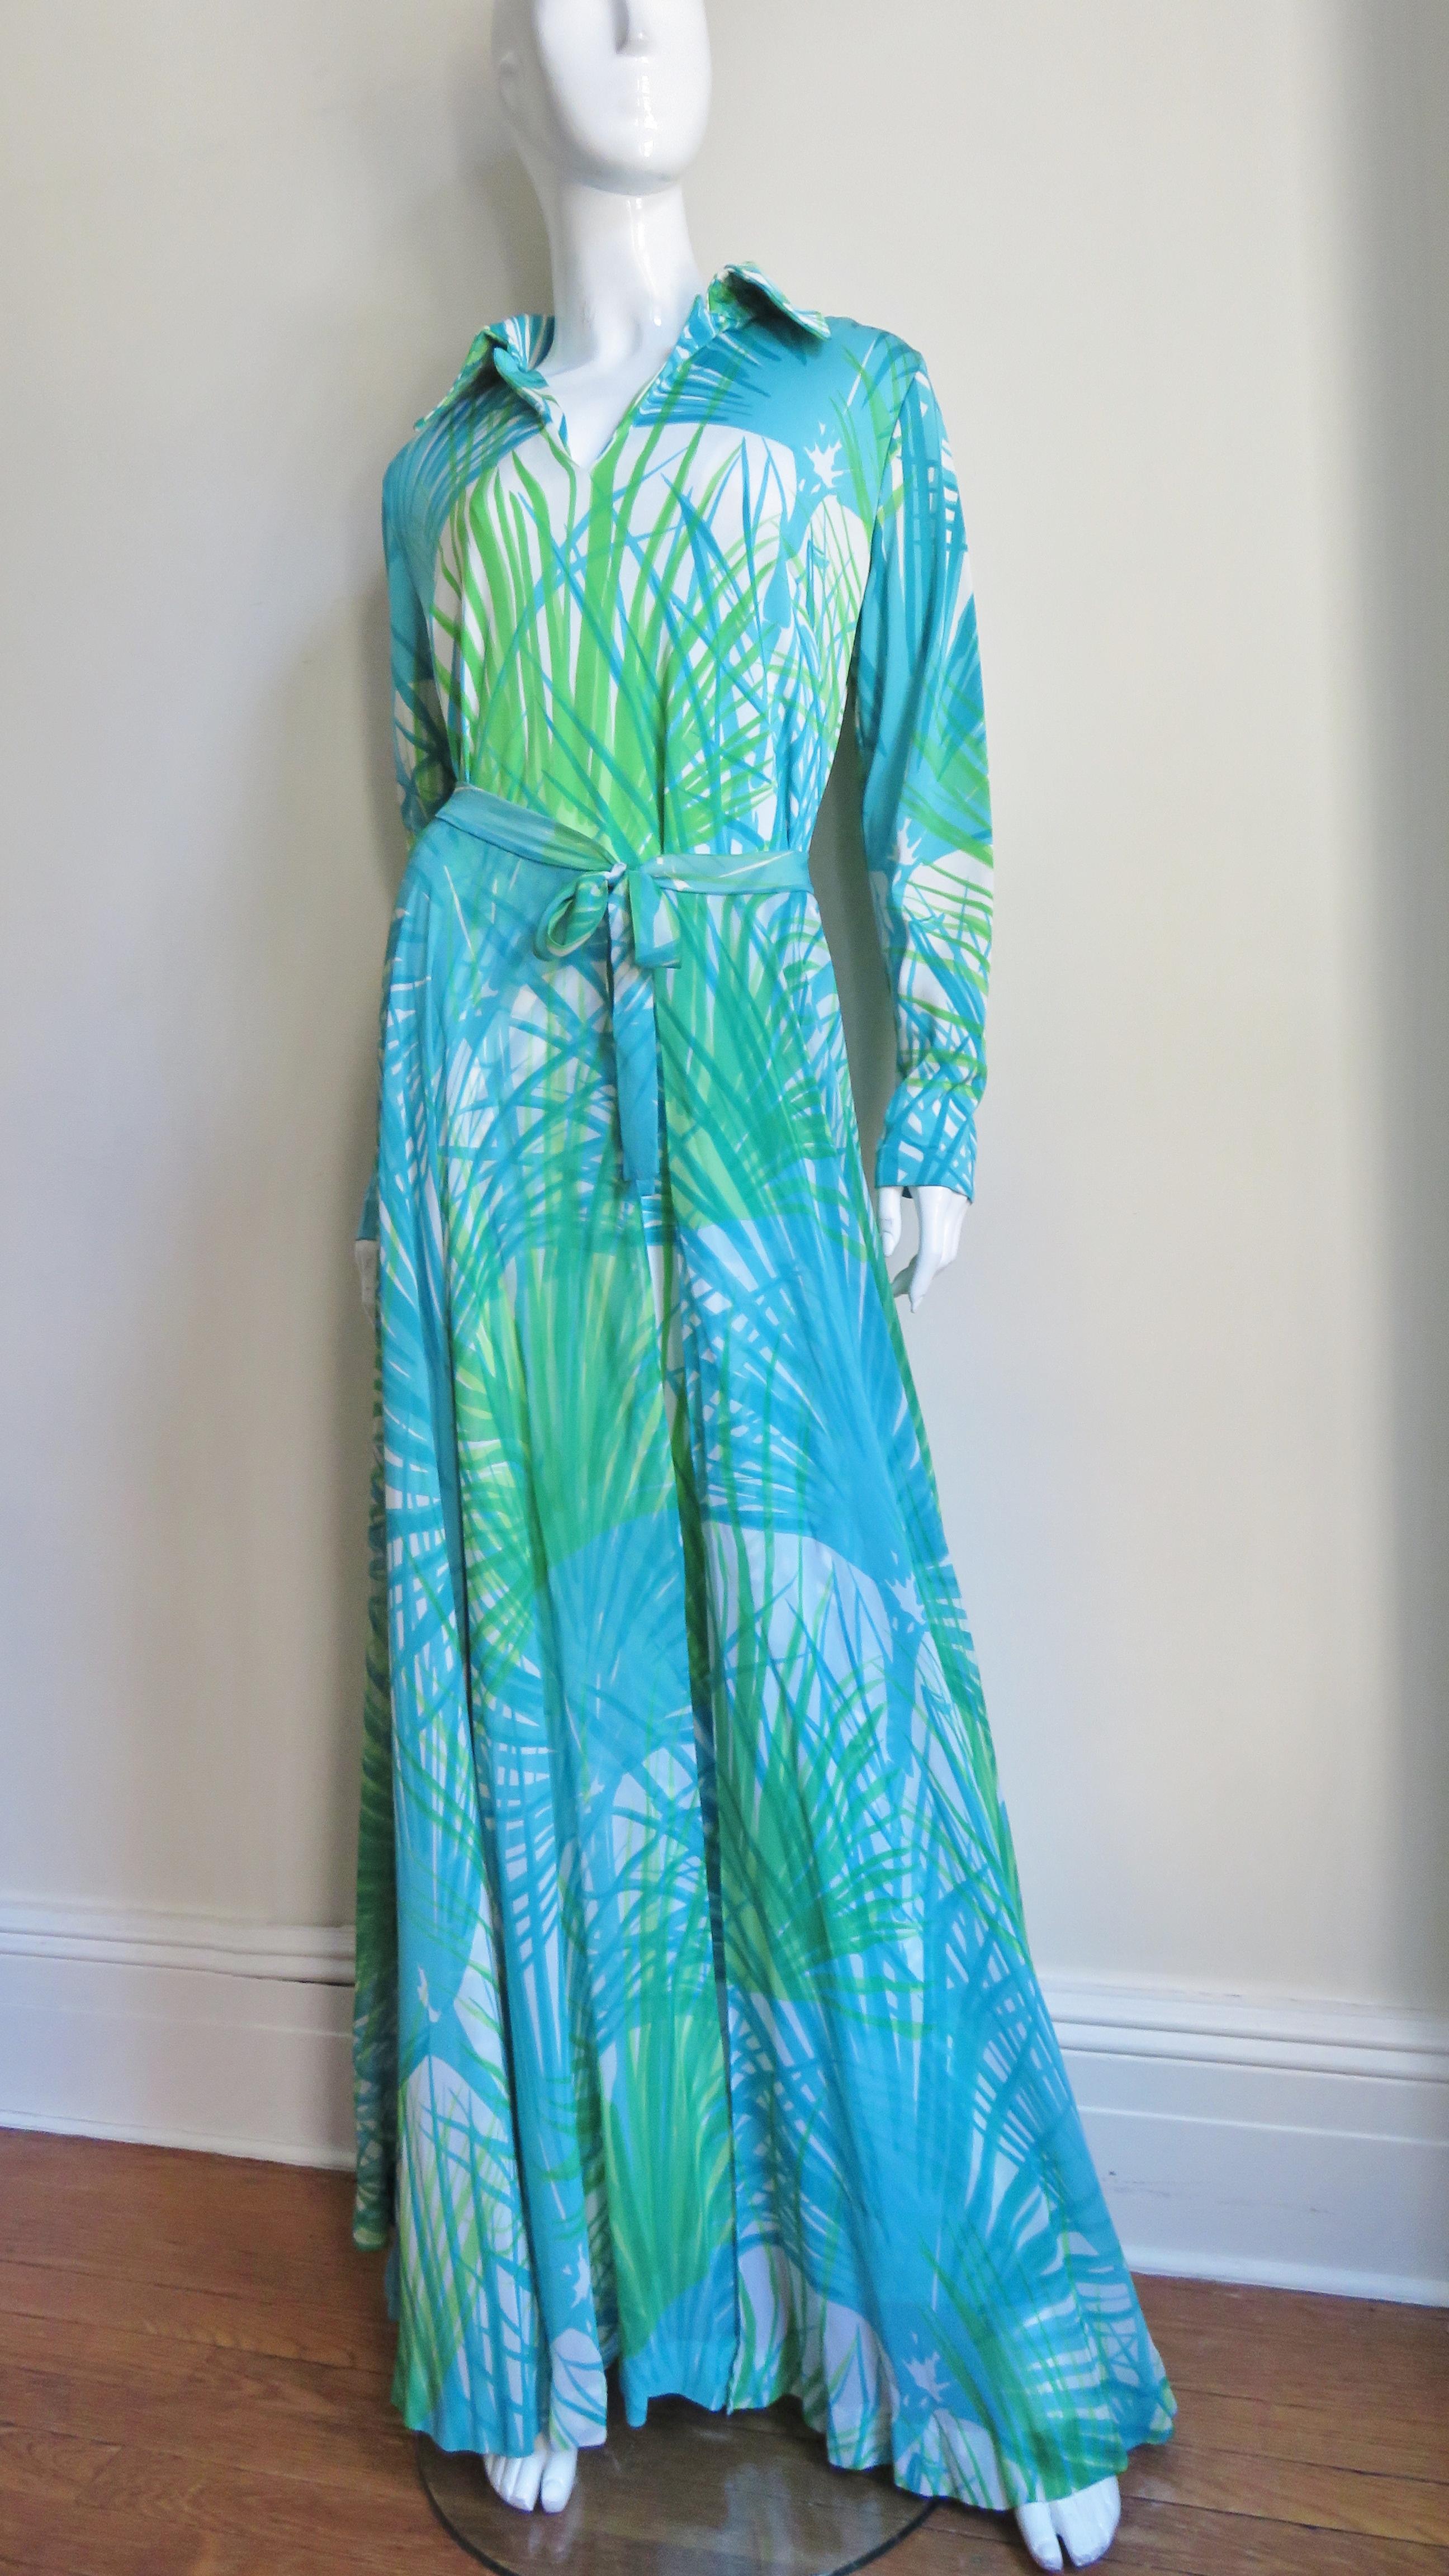 Un fabuleux ensemble de trois pièces en jersey et soie dans un imprimé d'herbe abstraite bleu et vert de La Mendola, composé d'une robe maxi, d'une ceinture à nouer et d'une surjupe en soie semi transparente assortie. La robe a une encolure en V, 5